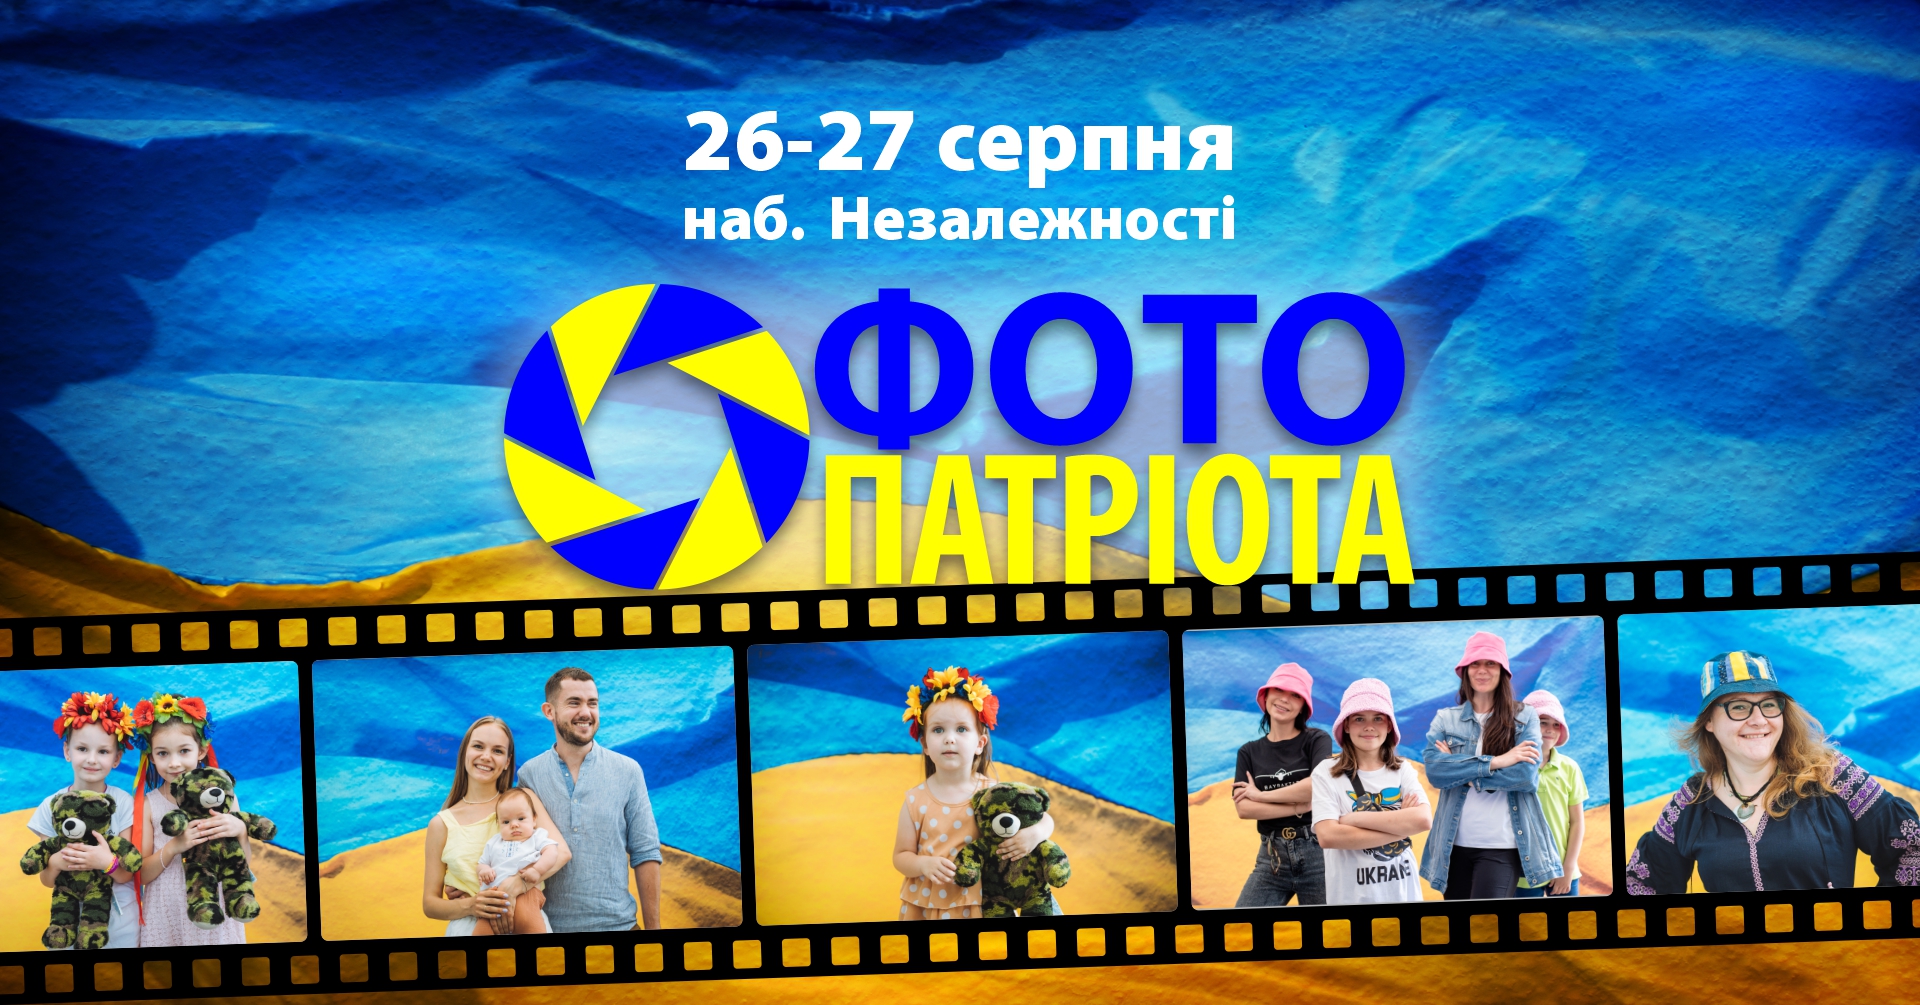 В Ужгороді з нагоди головних державних свят України традиційно робитимуть "Фото патріота"